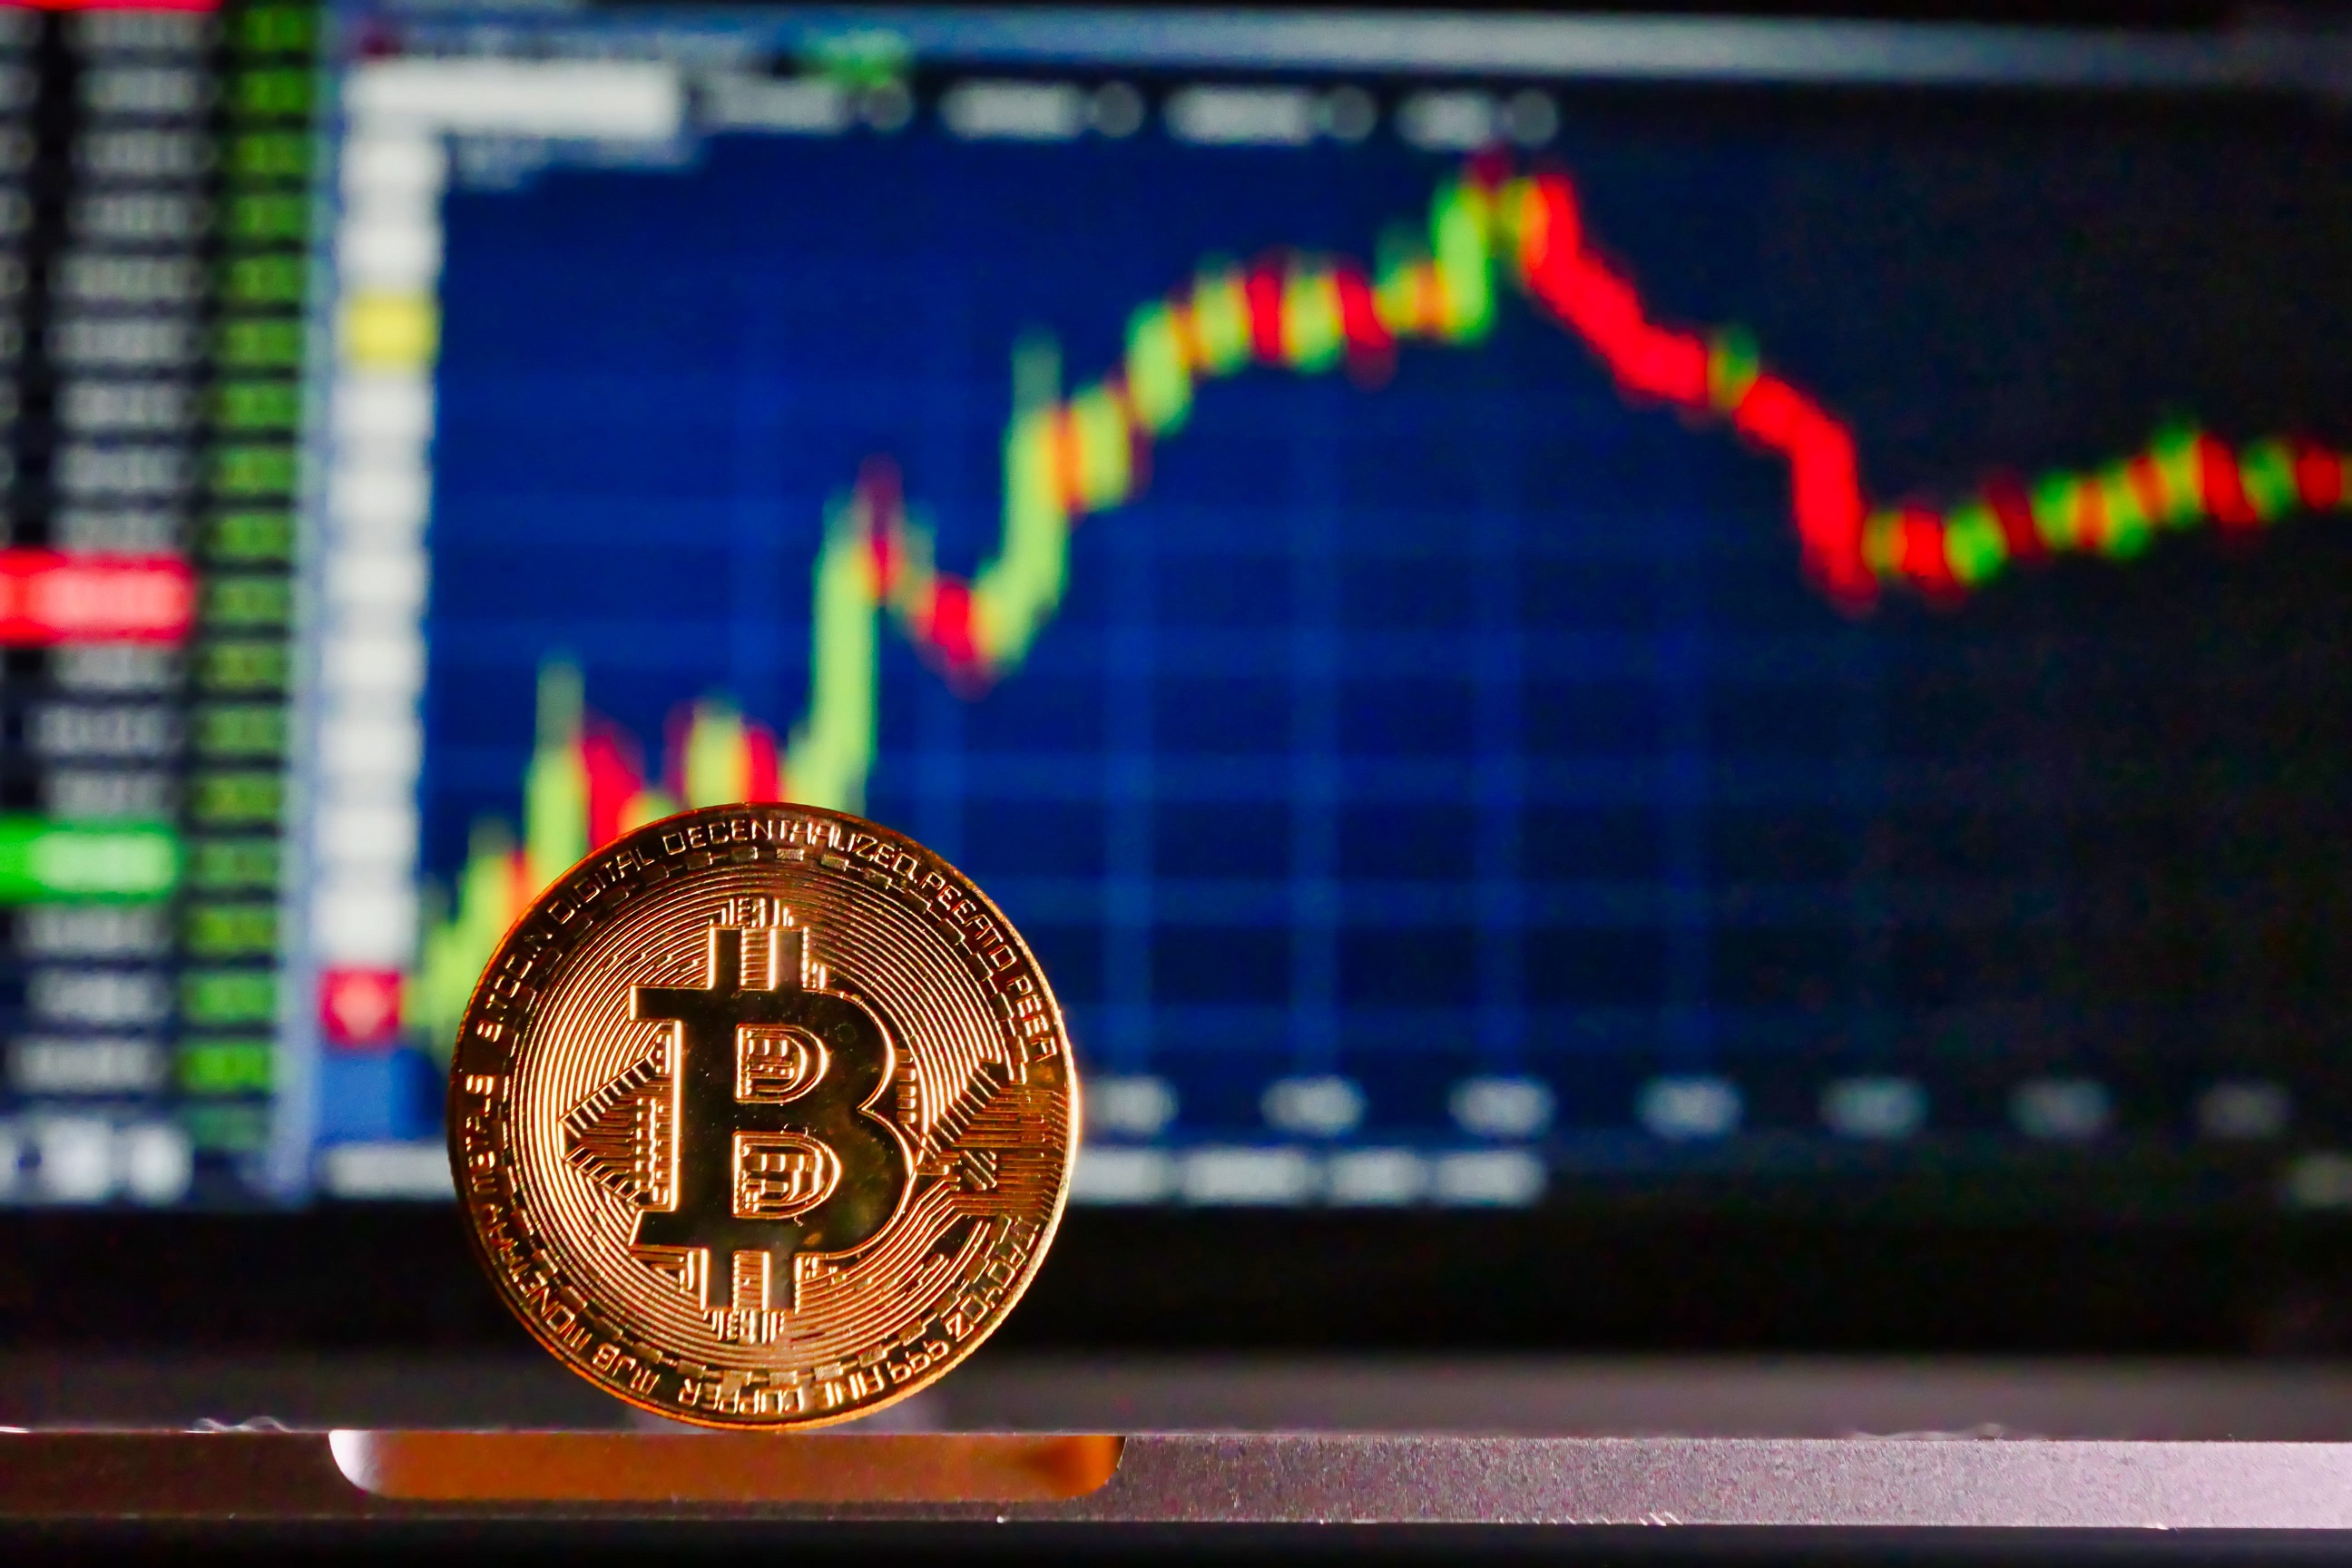 Kiszámolták, mennyi a valószínűsége, hogy decemberben 20 ezer dollár legyen a bitcoin árfolyama